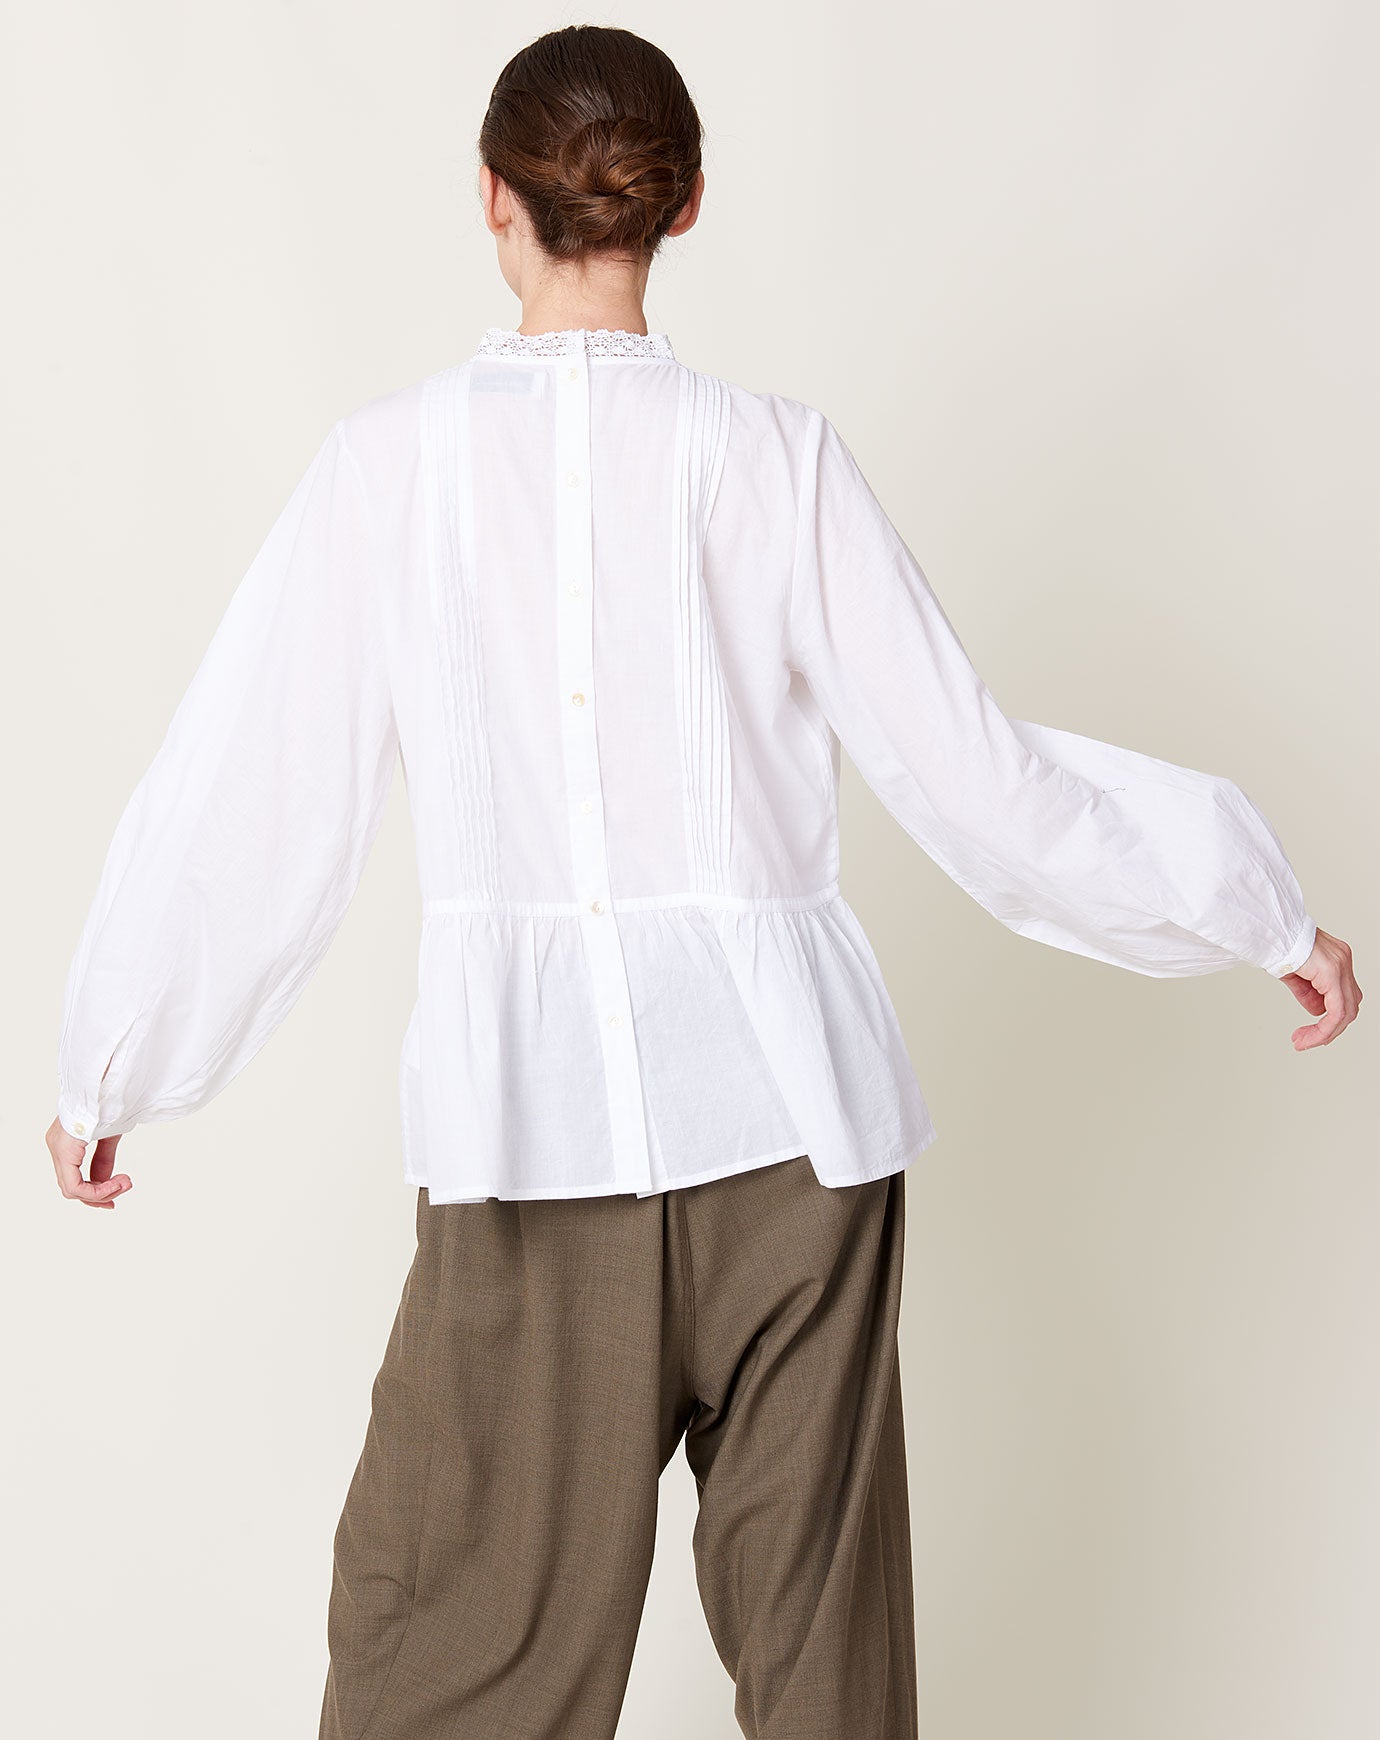 Skall Studio Mallow Shirt in Optic White